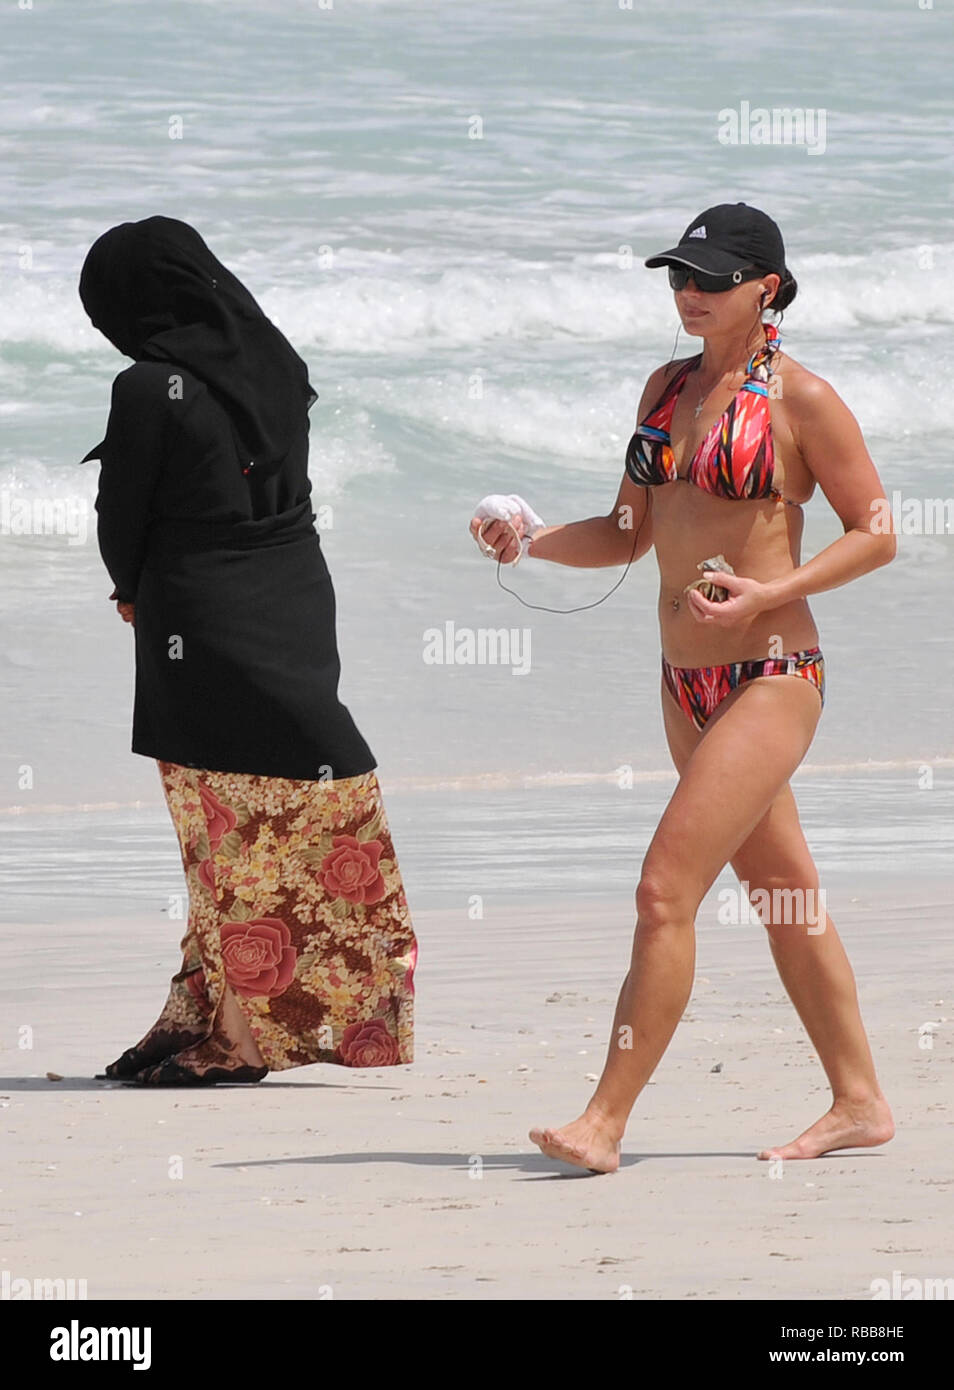 licenciada a Andrew Parsons Parsons / Medios de Comunicación. 14/05/2009.  Dubai, Emiratos Árabes Unidos. Una mujer en bikini camina pasado un damas  en una abaya en una playa de Dubai como el